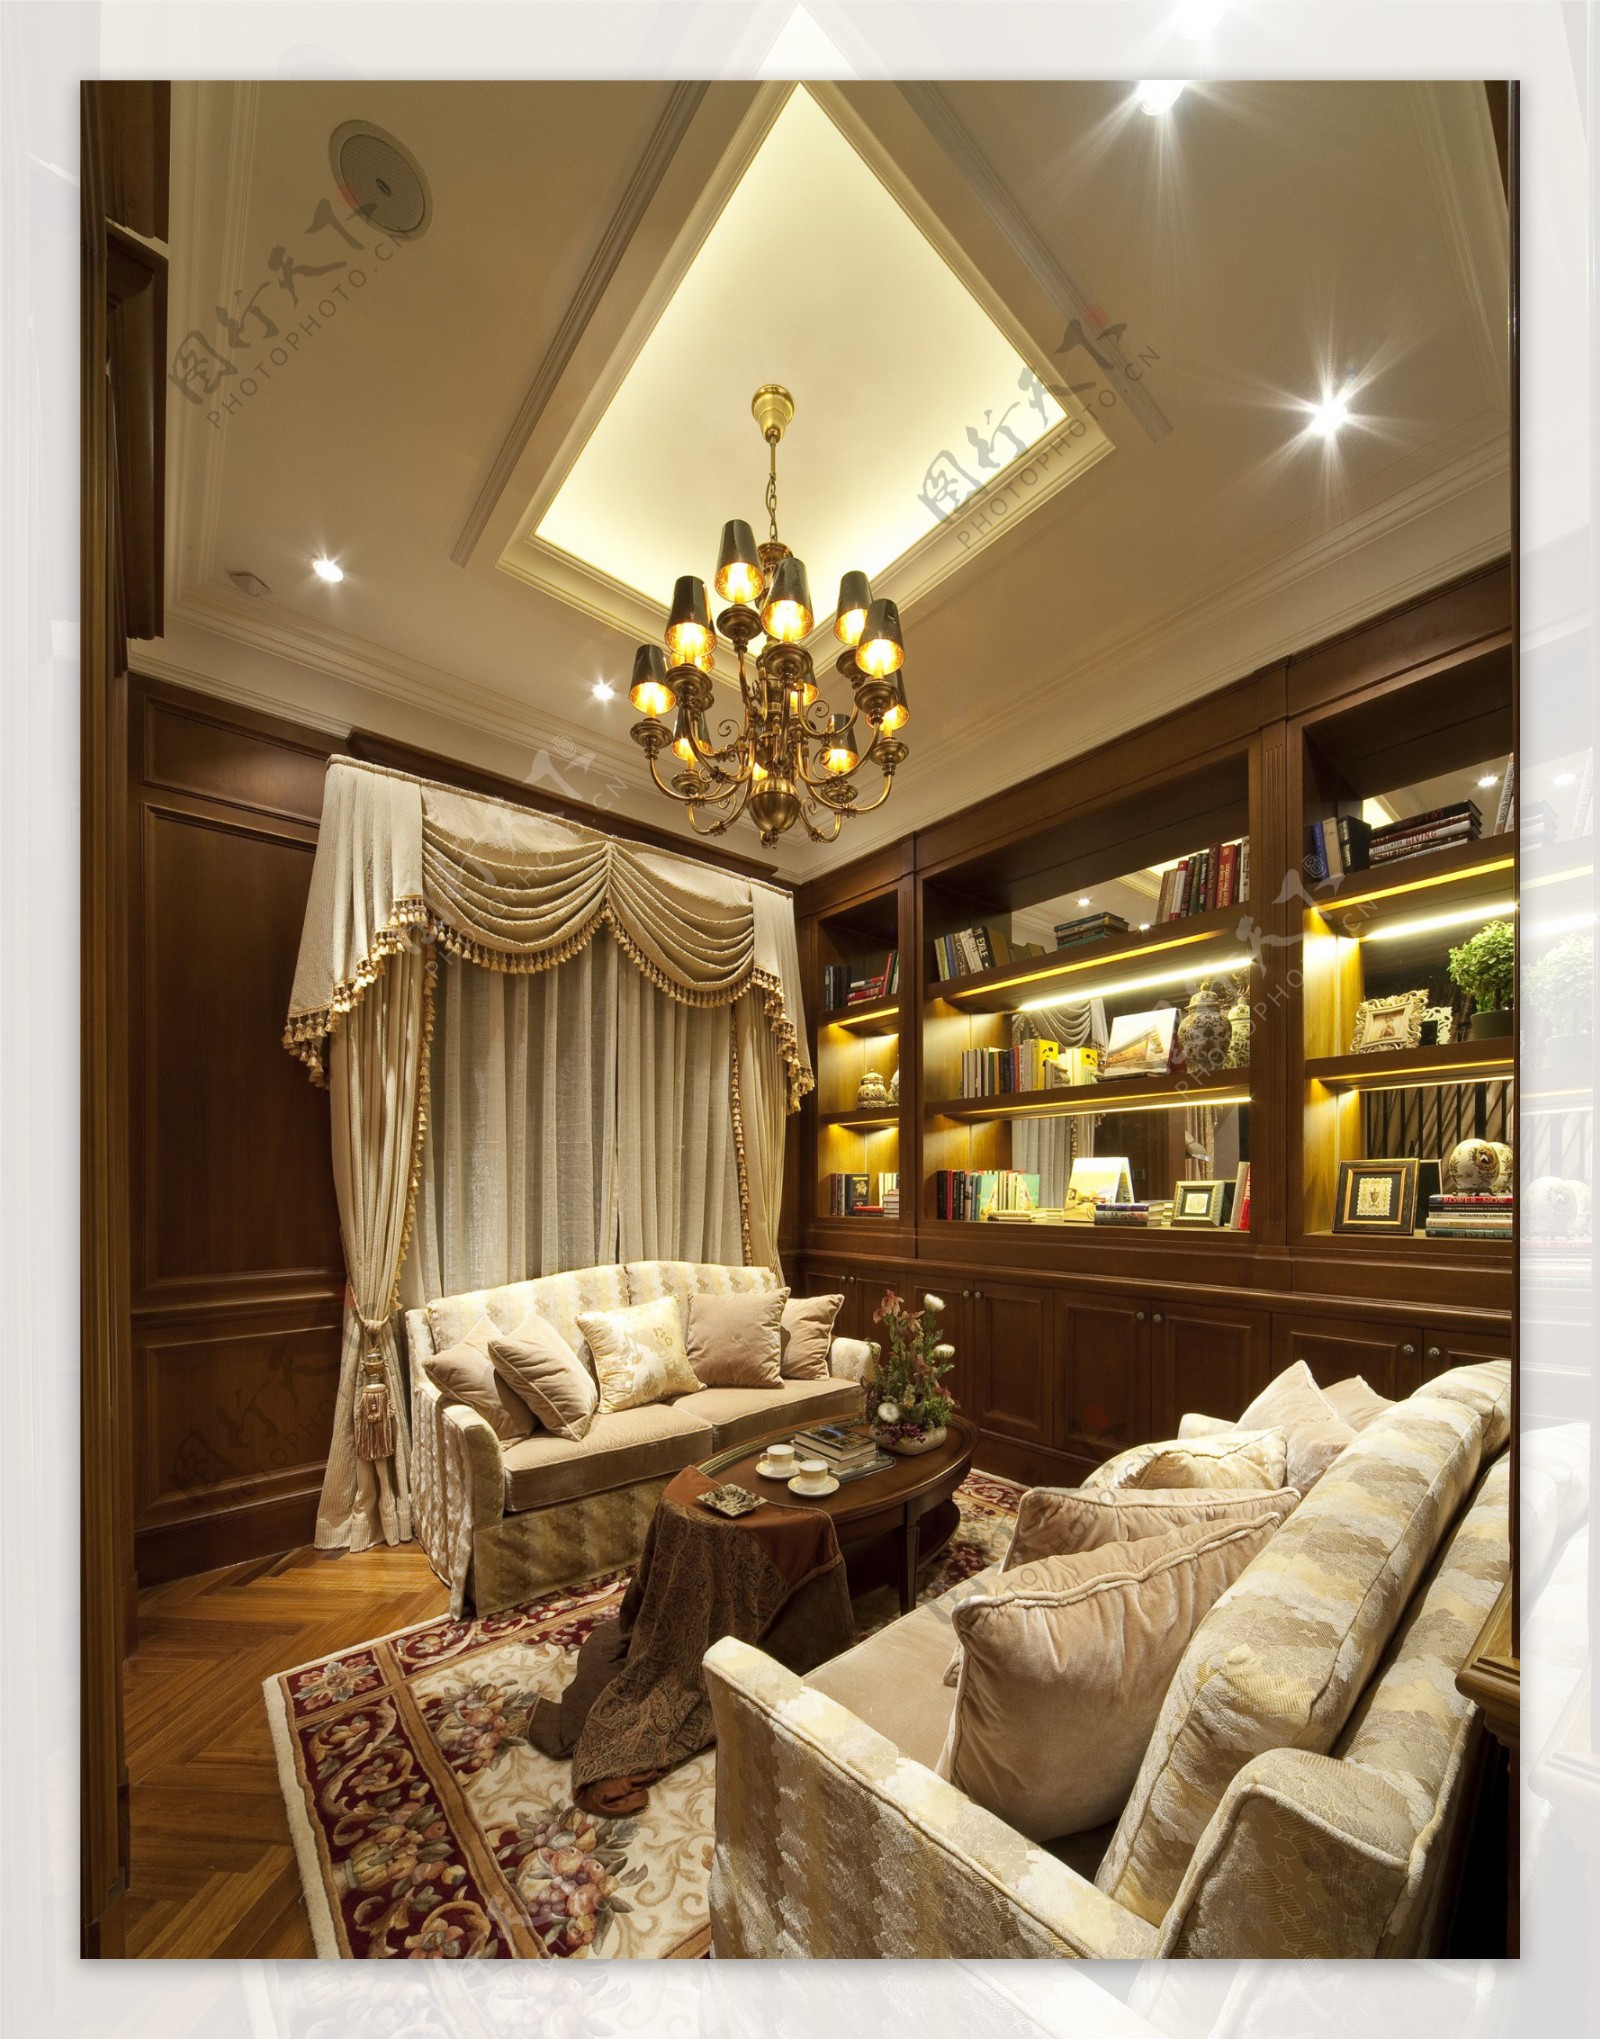 现代奢华客厅金色吊灯室内装修效果图